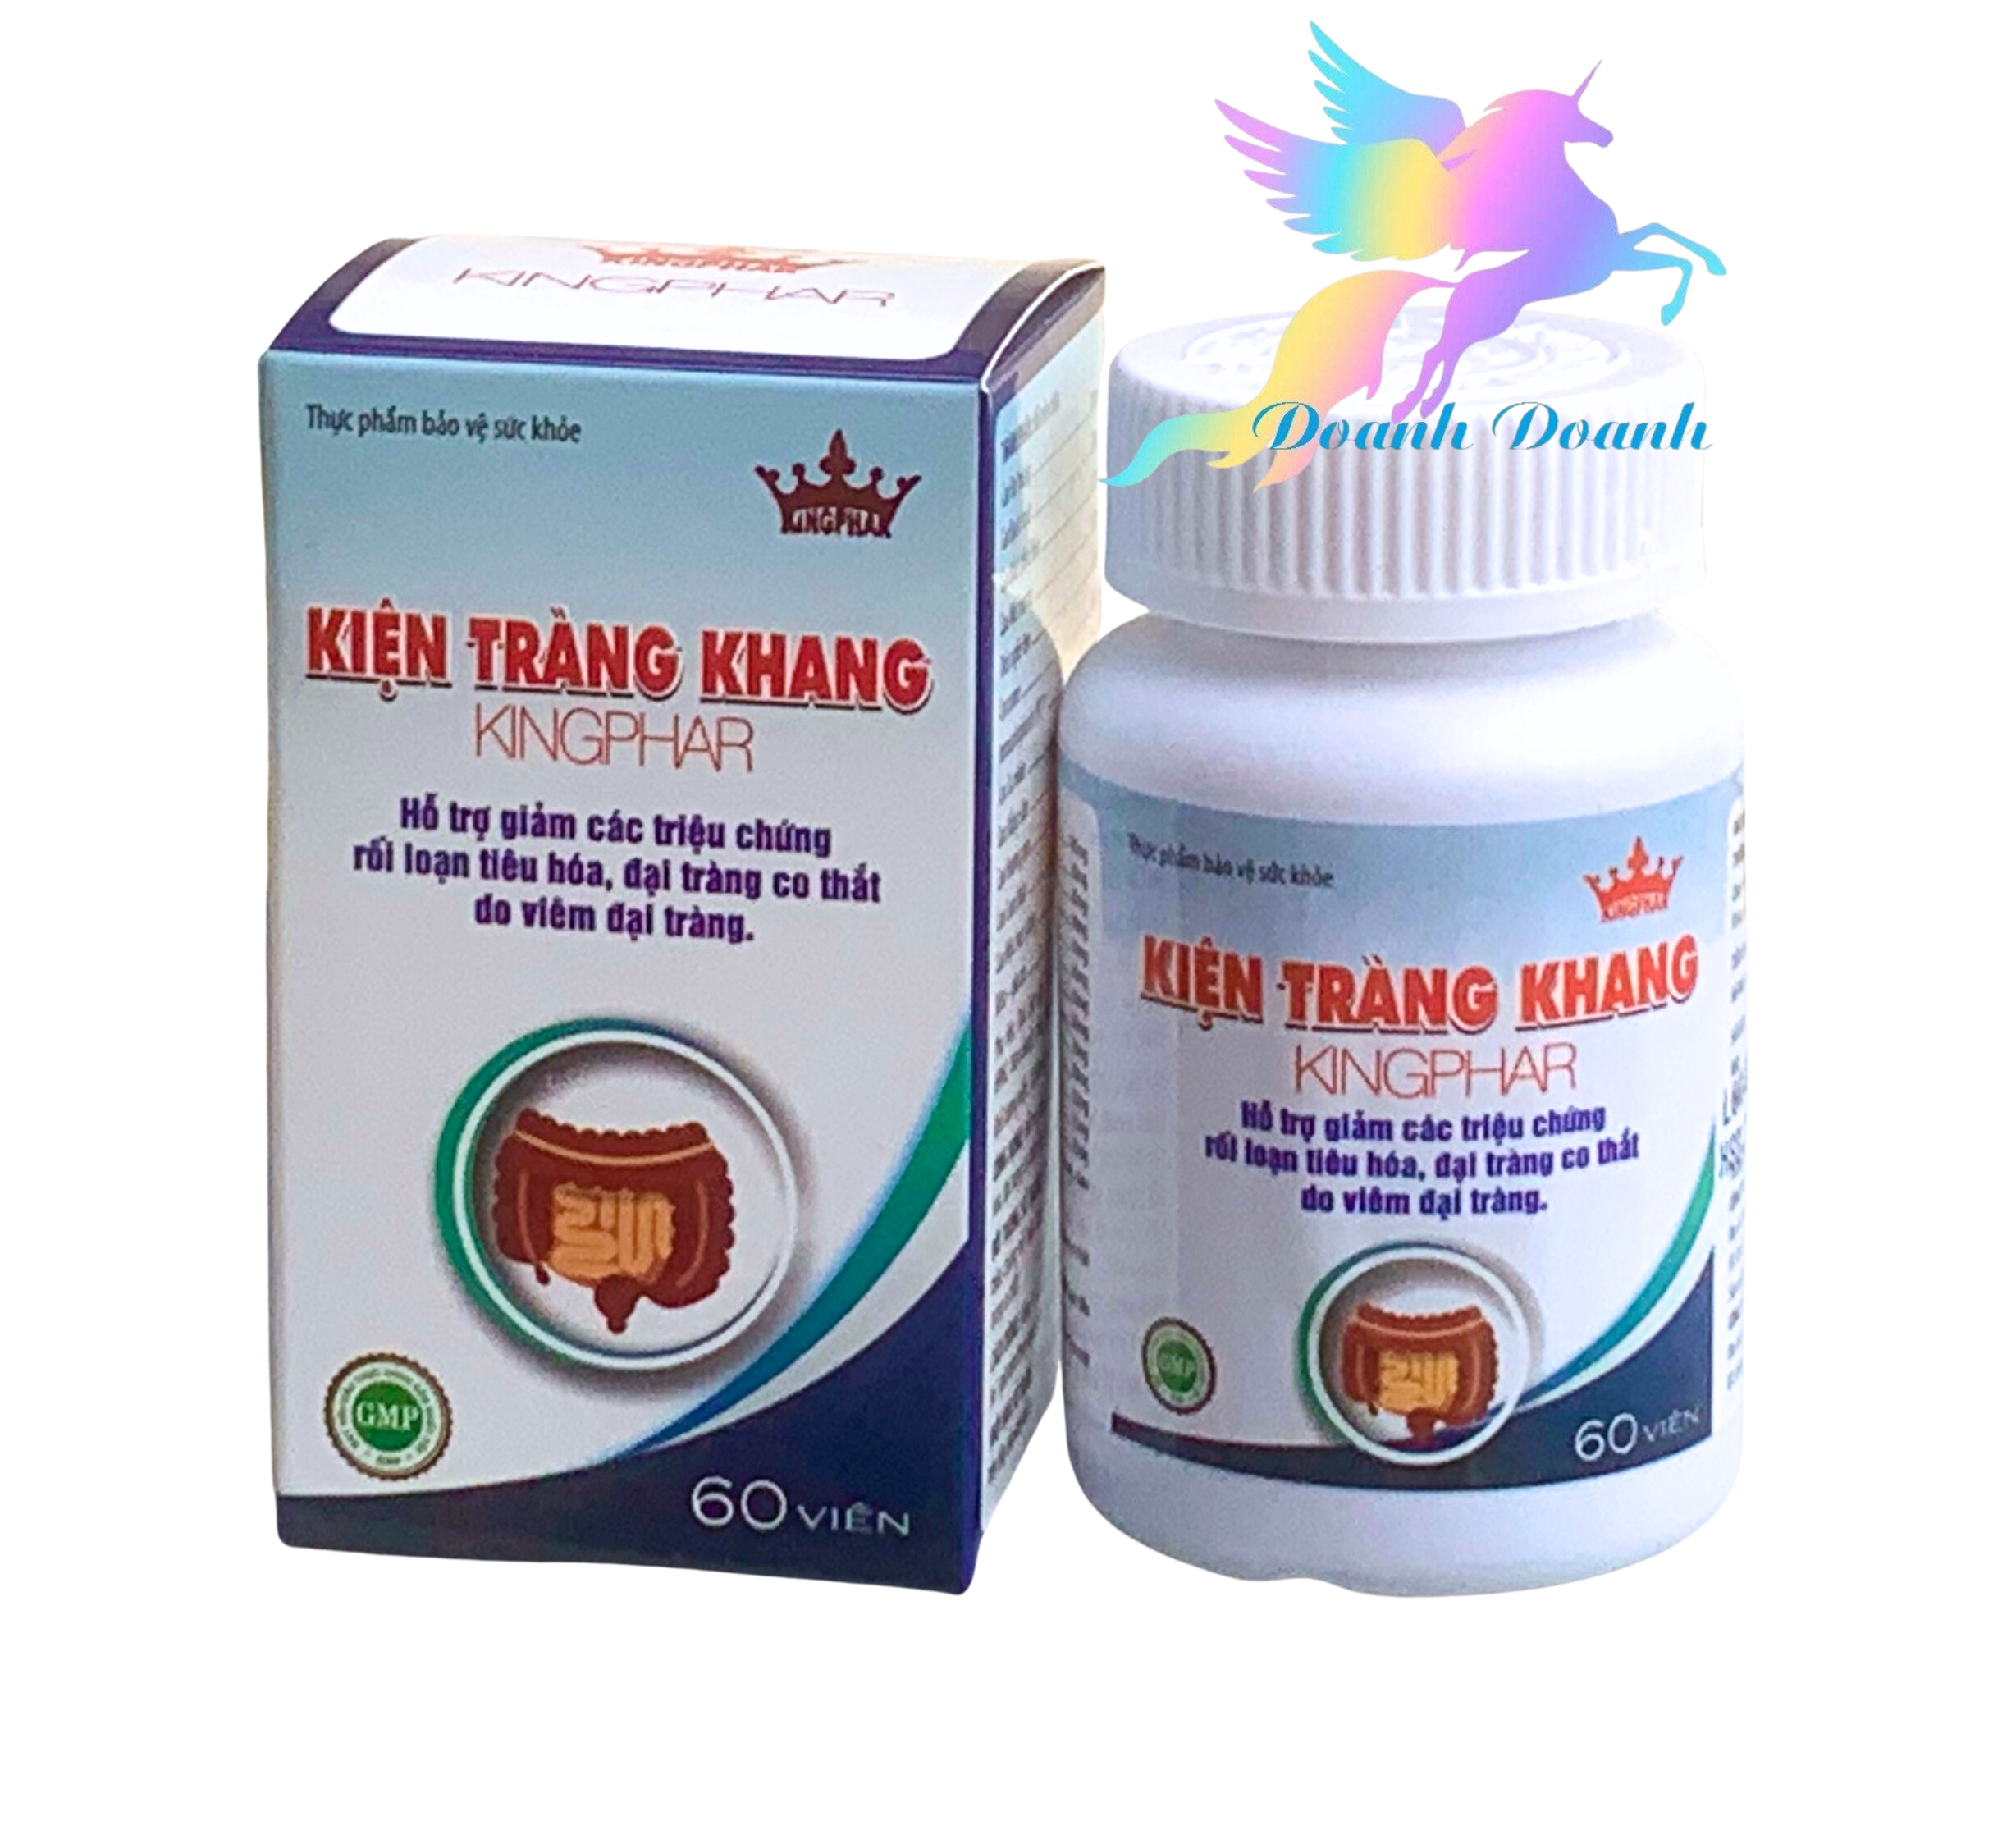 Viên uống Kiện tràng khang Kingphar, lọ 60 viên, dùng cho các trường hợp viêm đại tràng, rối loạn tiêu hoá